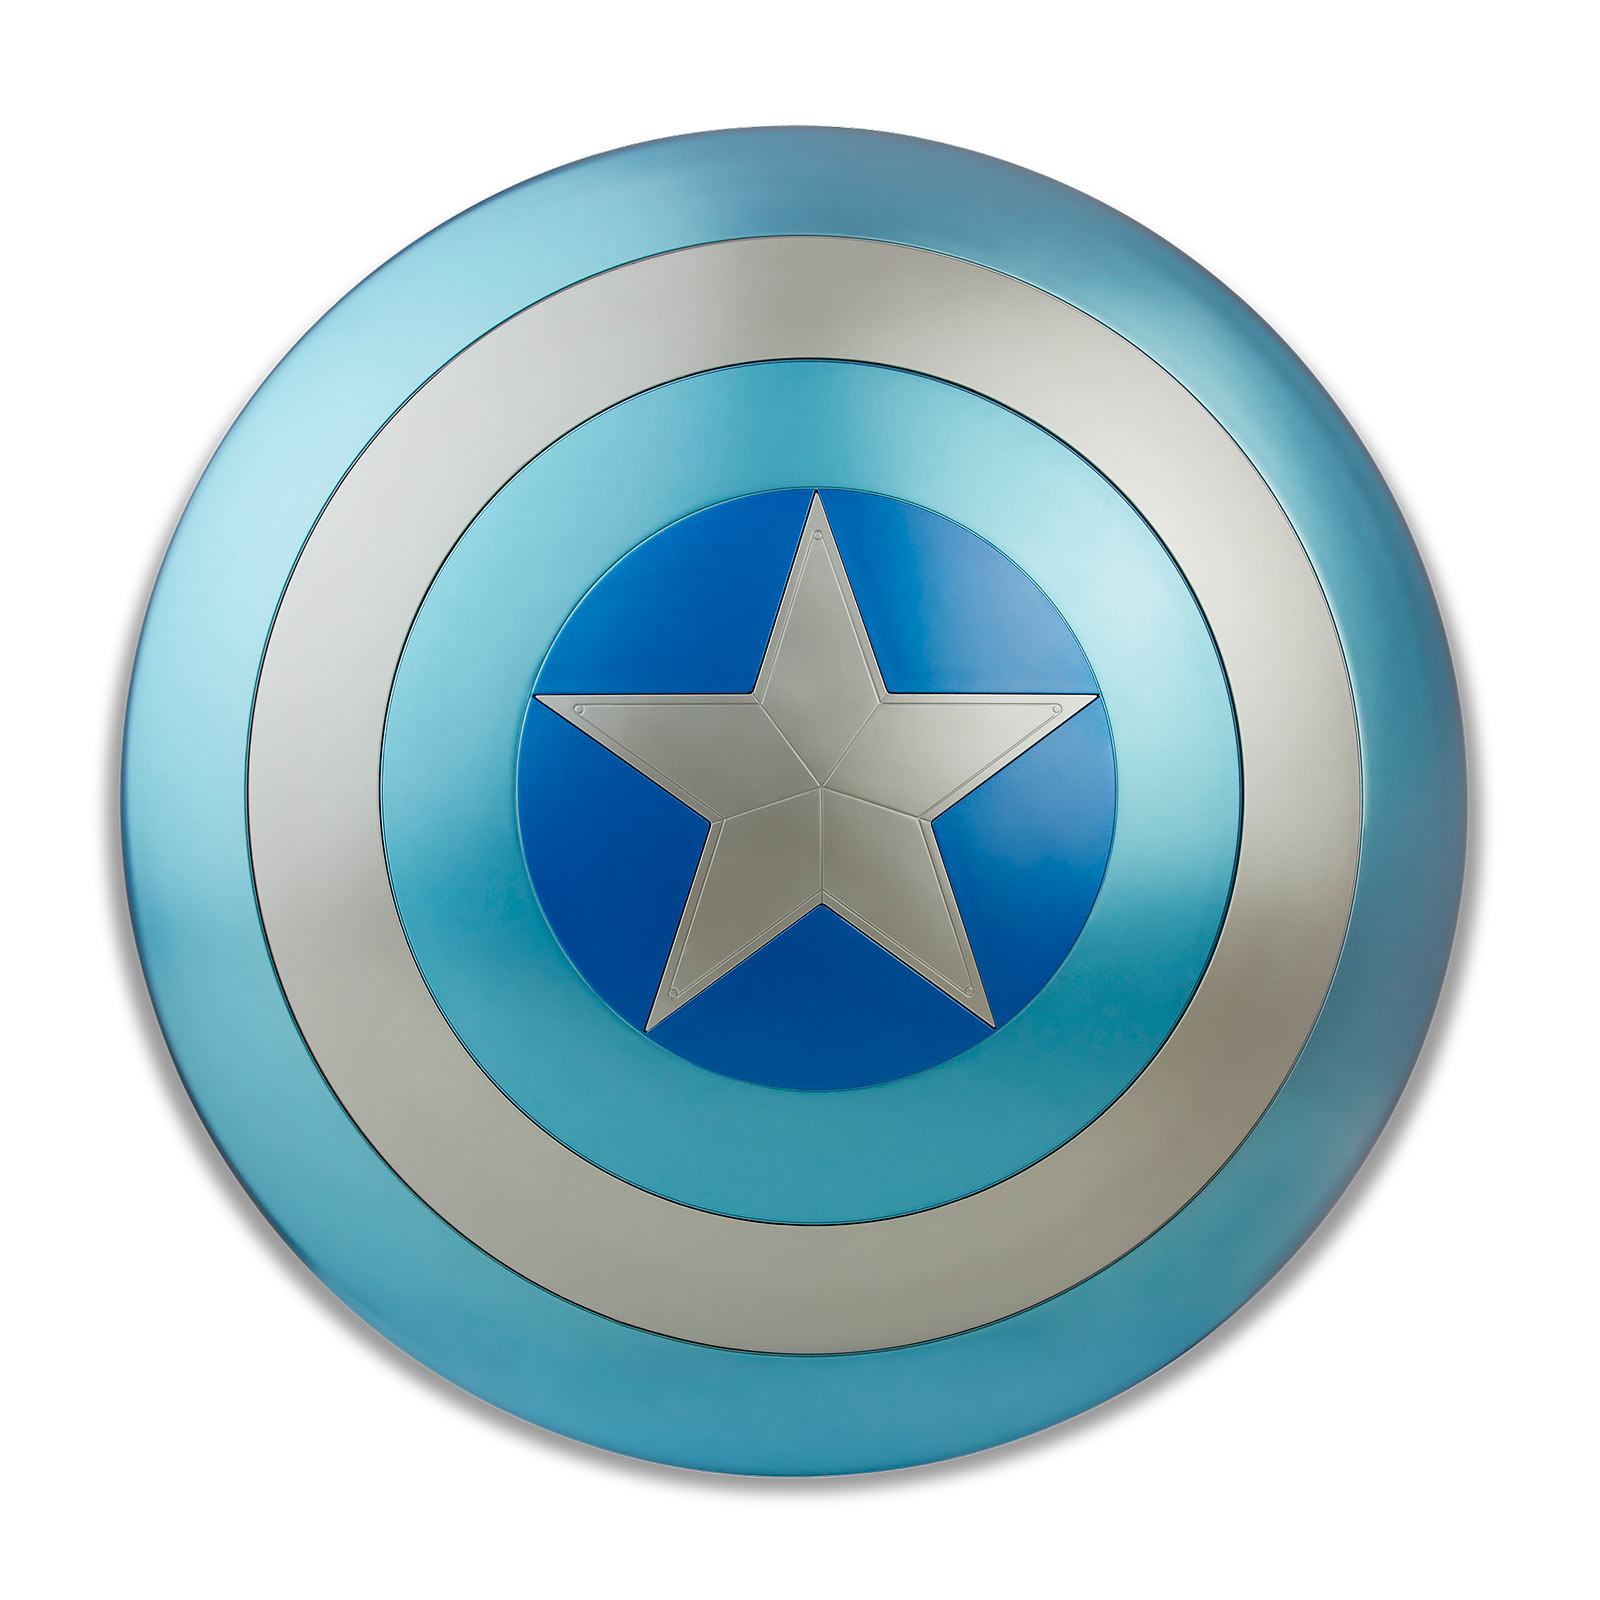 Captain America - Stealth Schild Premium Replik